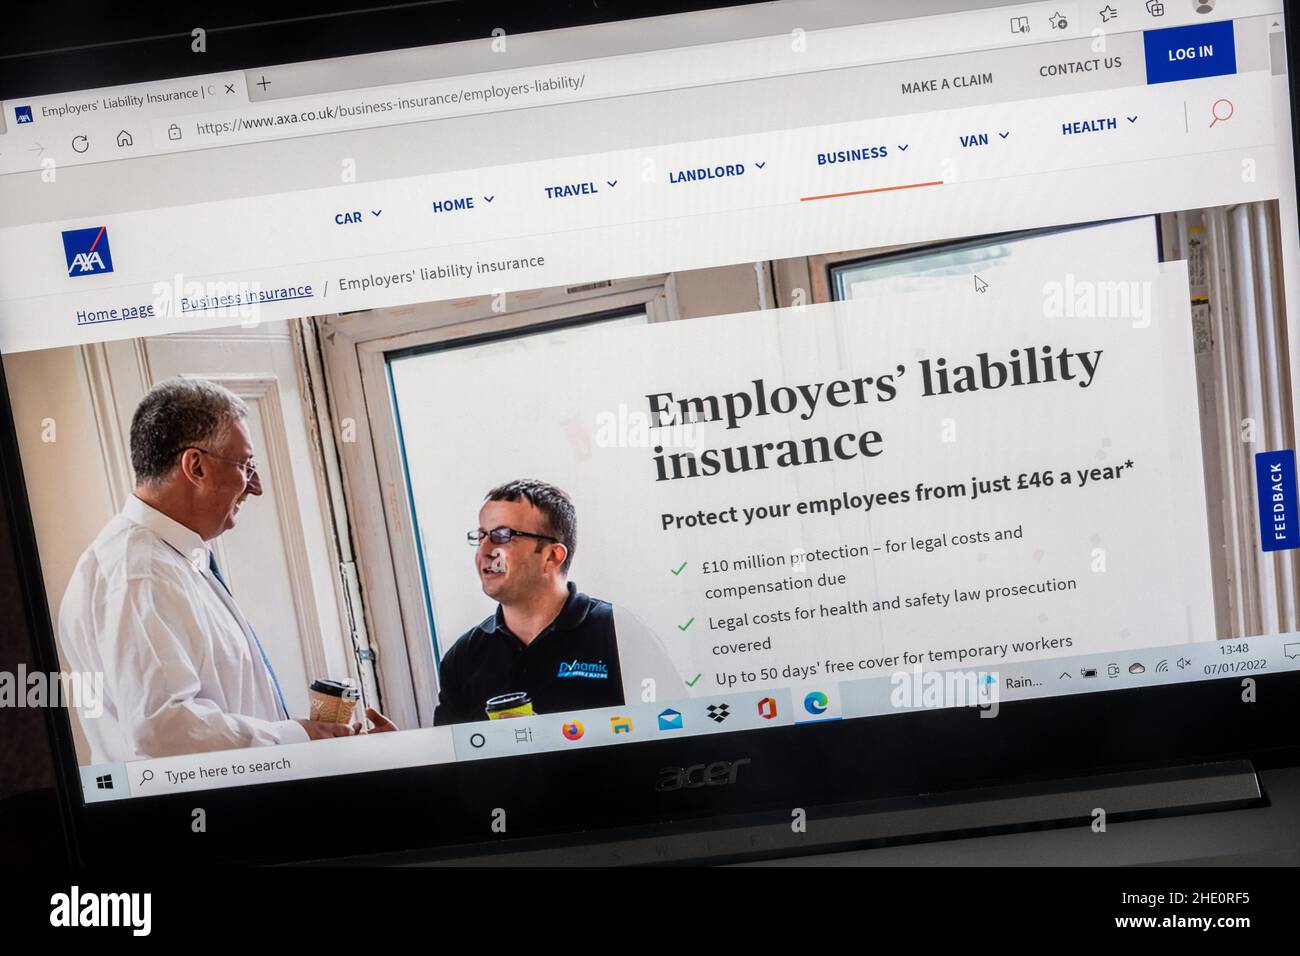 AXA Insurance Company sullo schermo di un computer portatile. Pagina assicurazione responsabilità dei datori di lavoro. Foto Stock